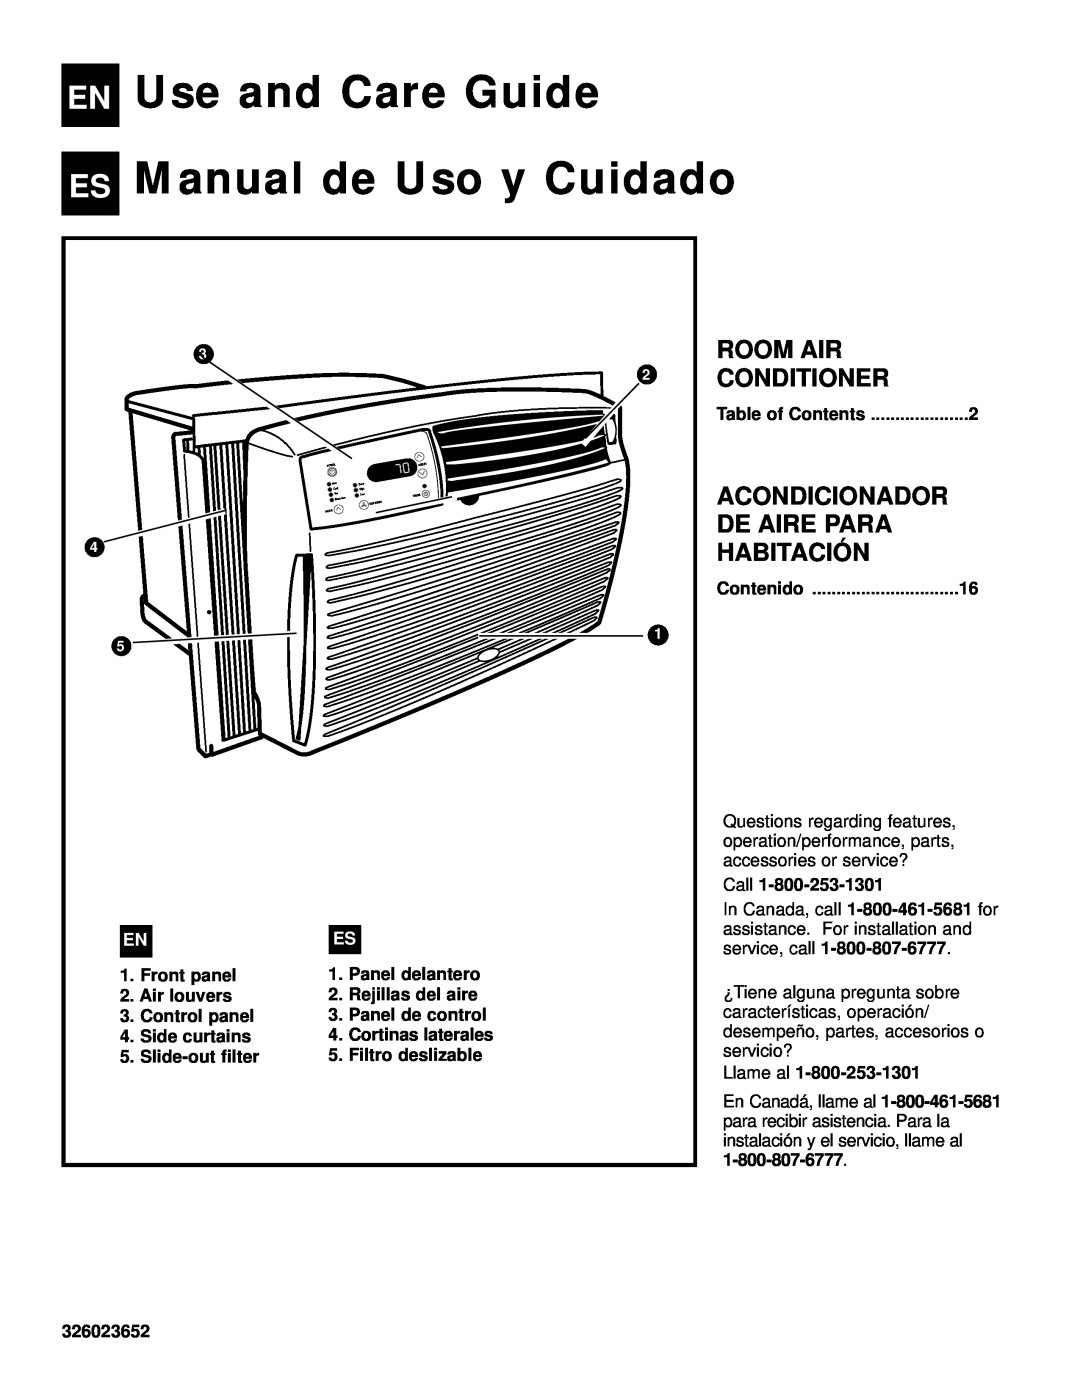 Whirlpool ACQ058MM0 manual EN Use and Care Guide, ES Manual de Uso y Cuidado, Room Air, Conditioner, Acondicionador 